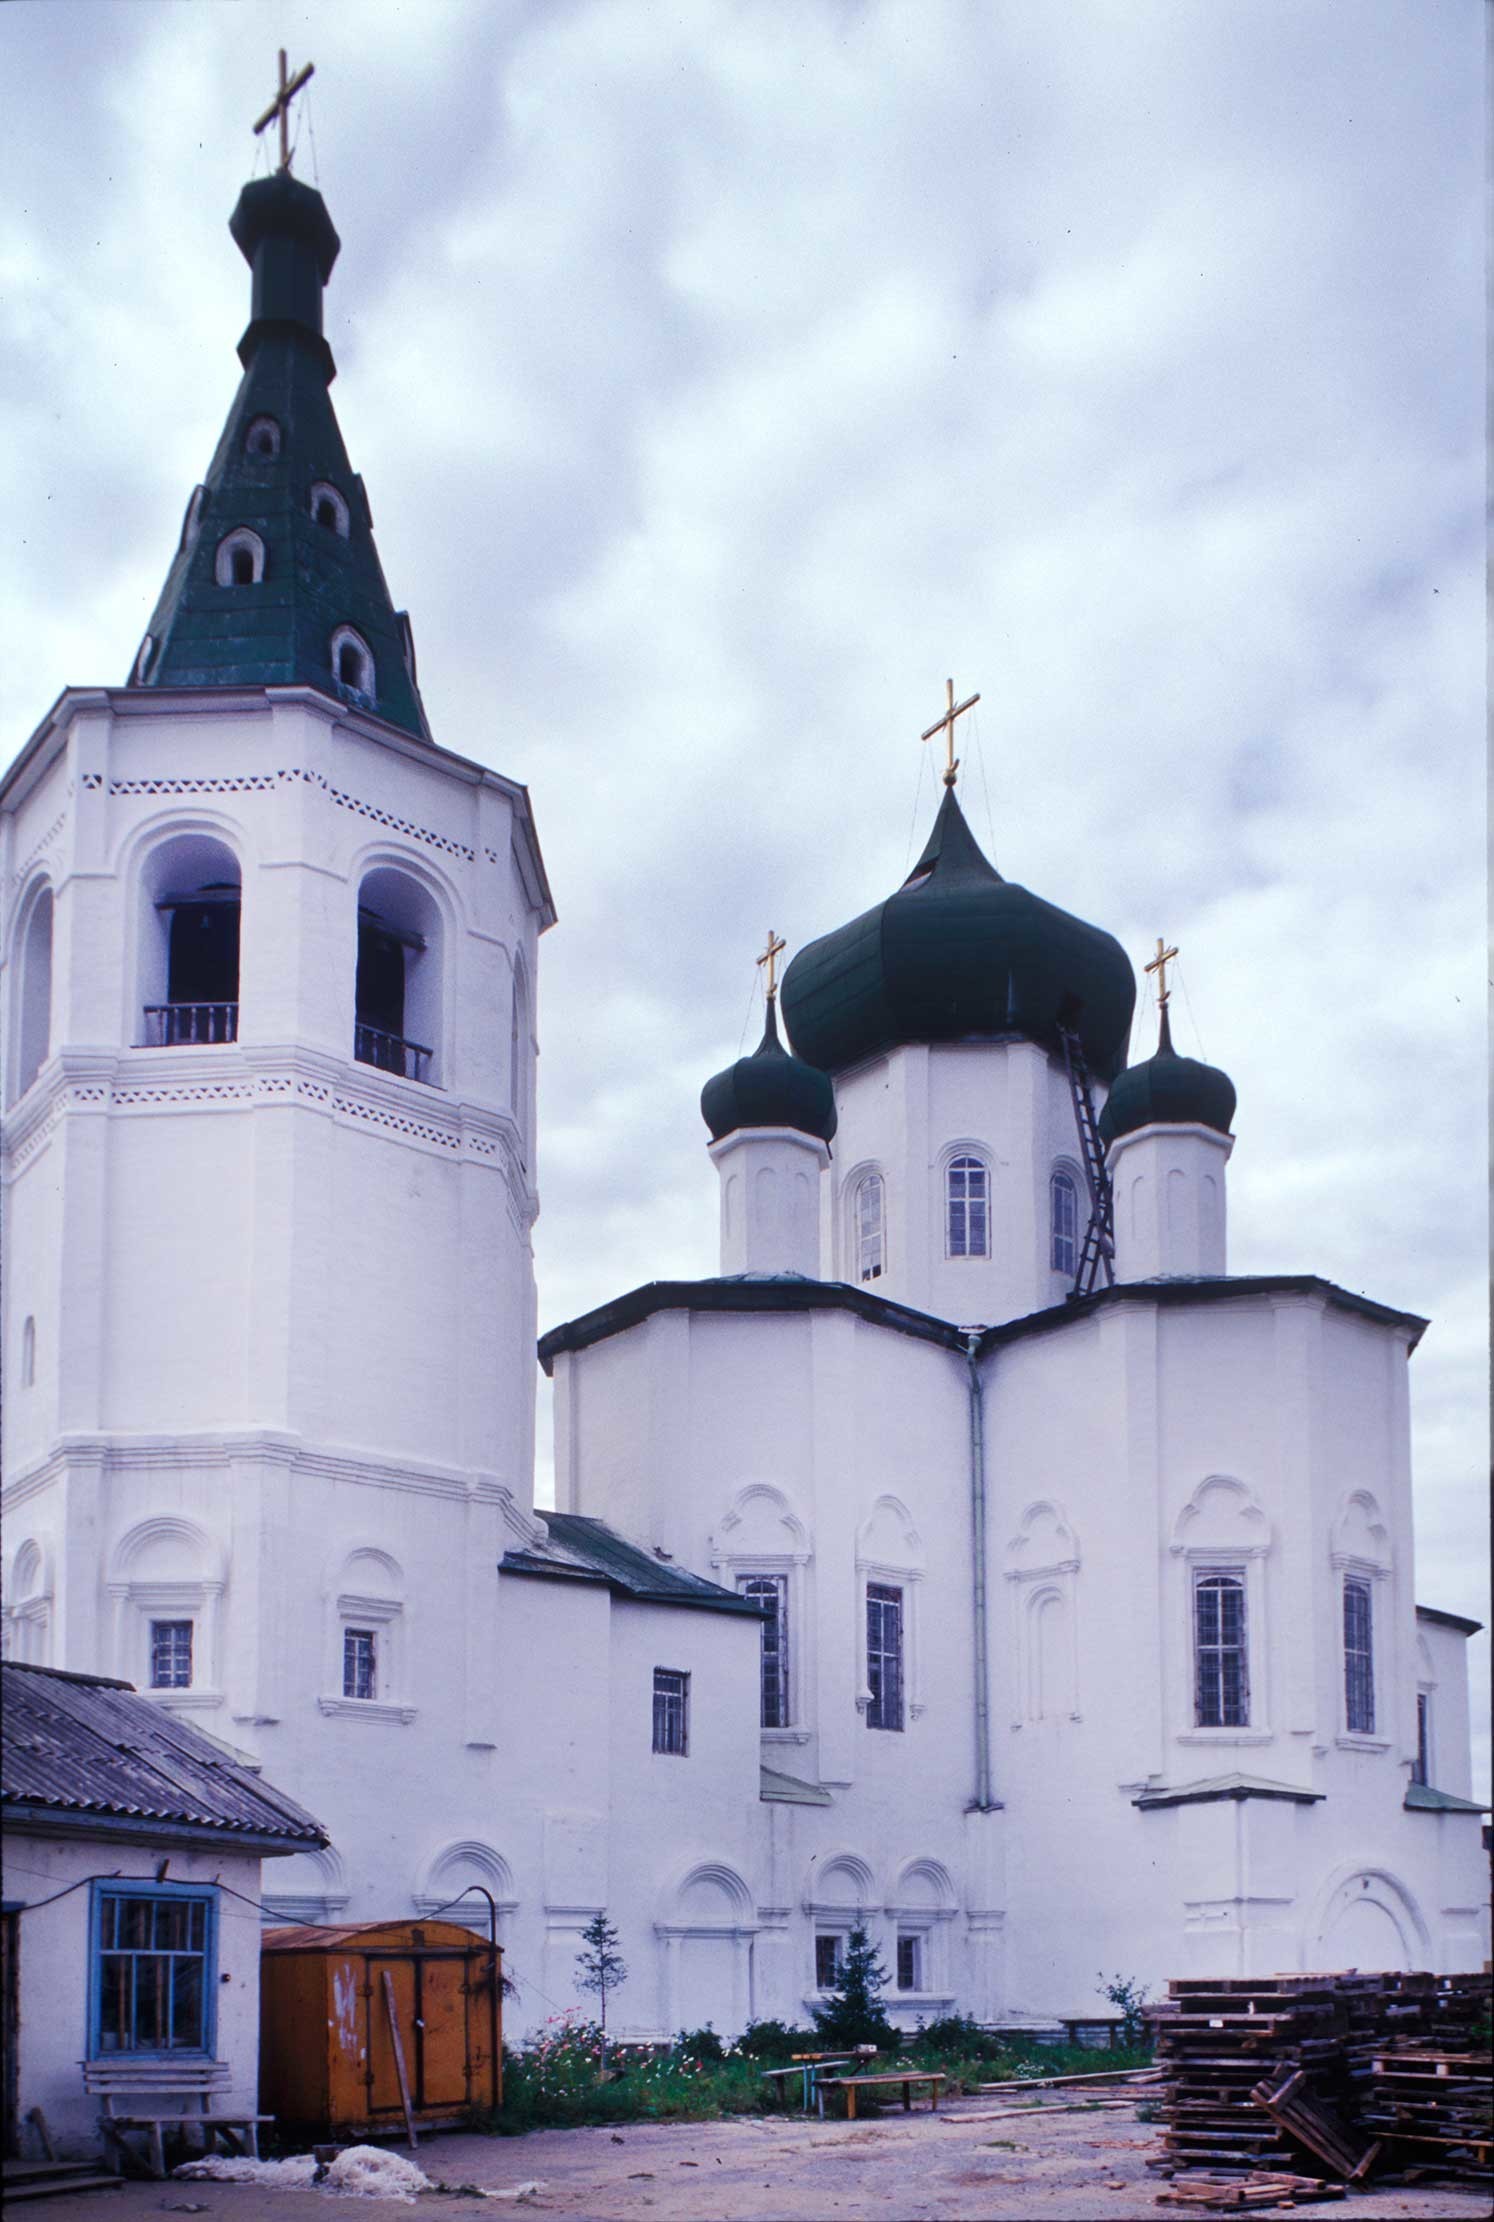 Monastère de la Trinité. Clocher et église des Saints-Pierre-et-Paul. 29 août 1999